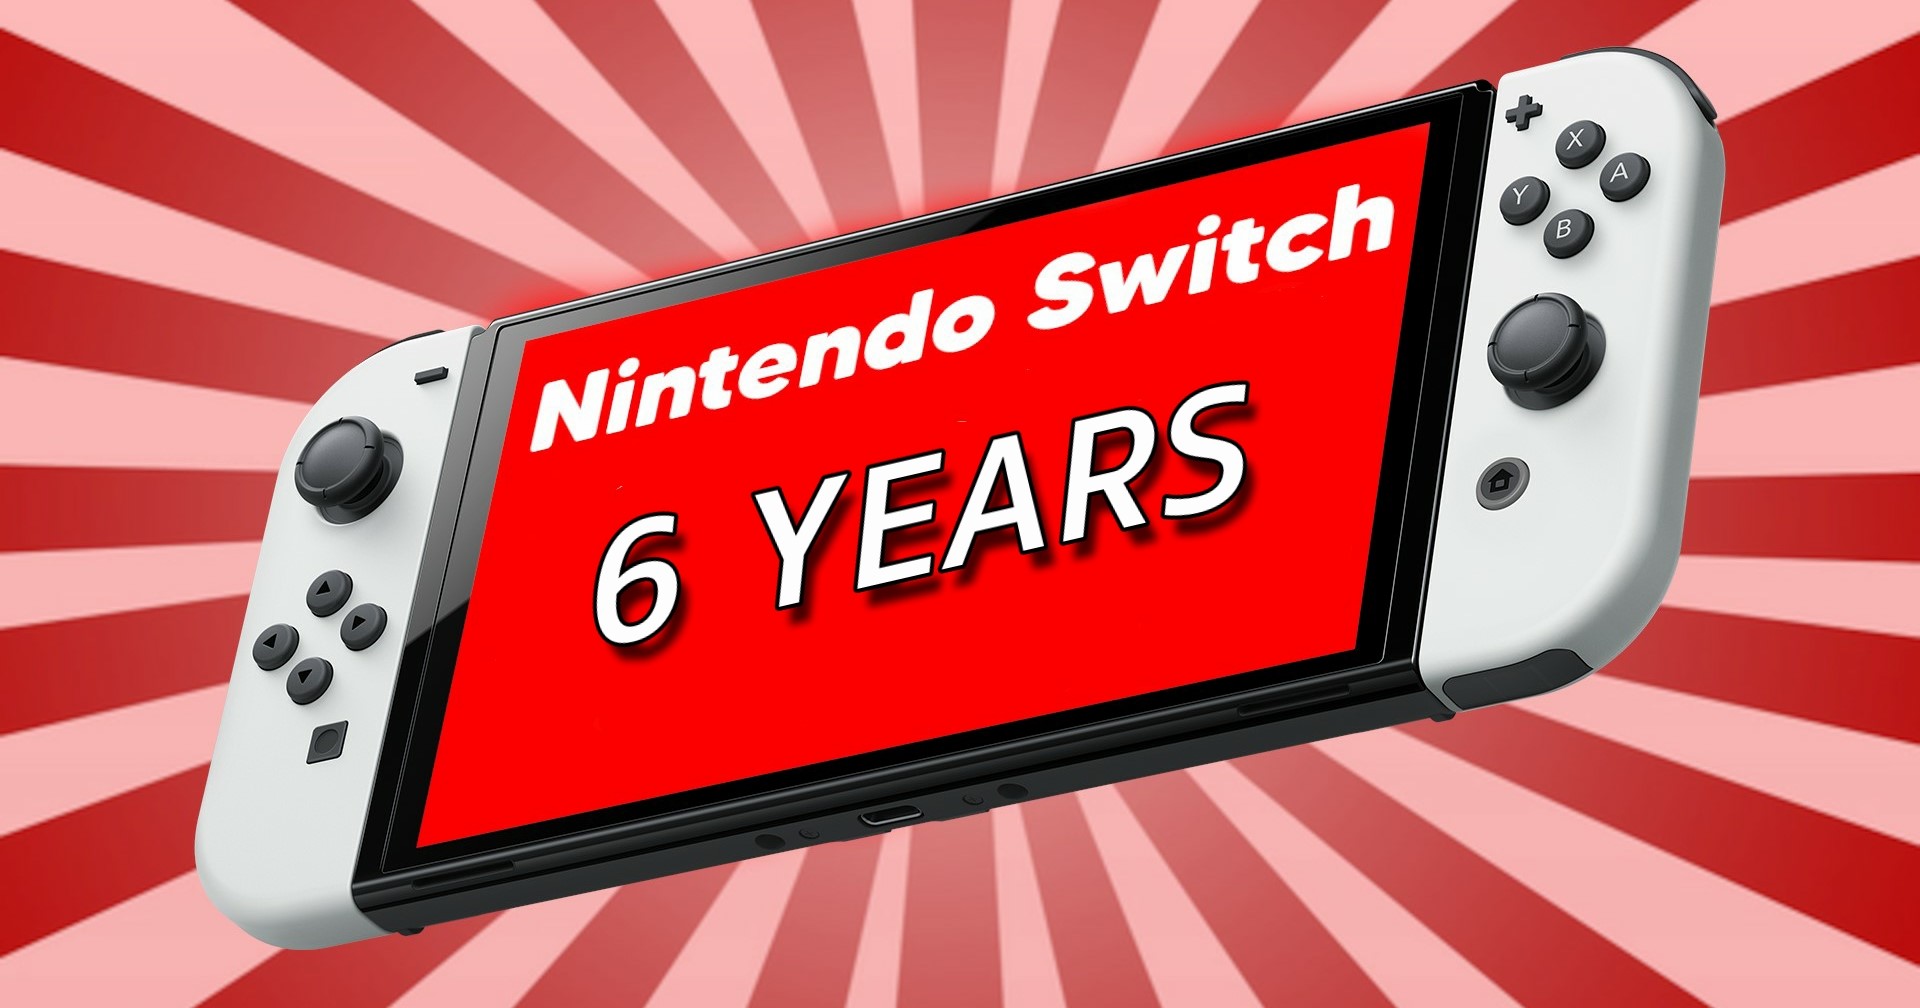 [บทความ] Nintendo Switch ผ่านร้อนผ่านหนาวมา 6 ปี ไปต่อหรือพอแค่นี้